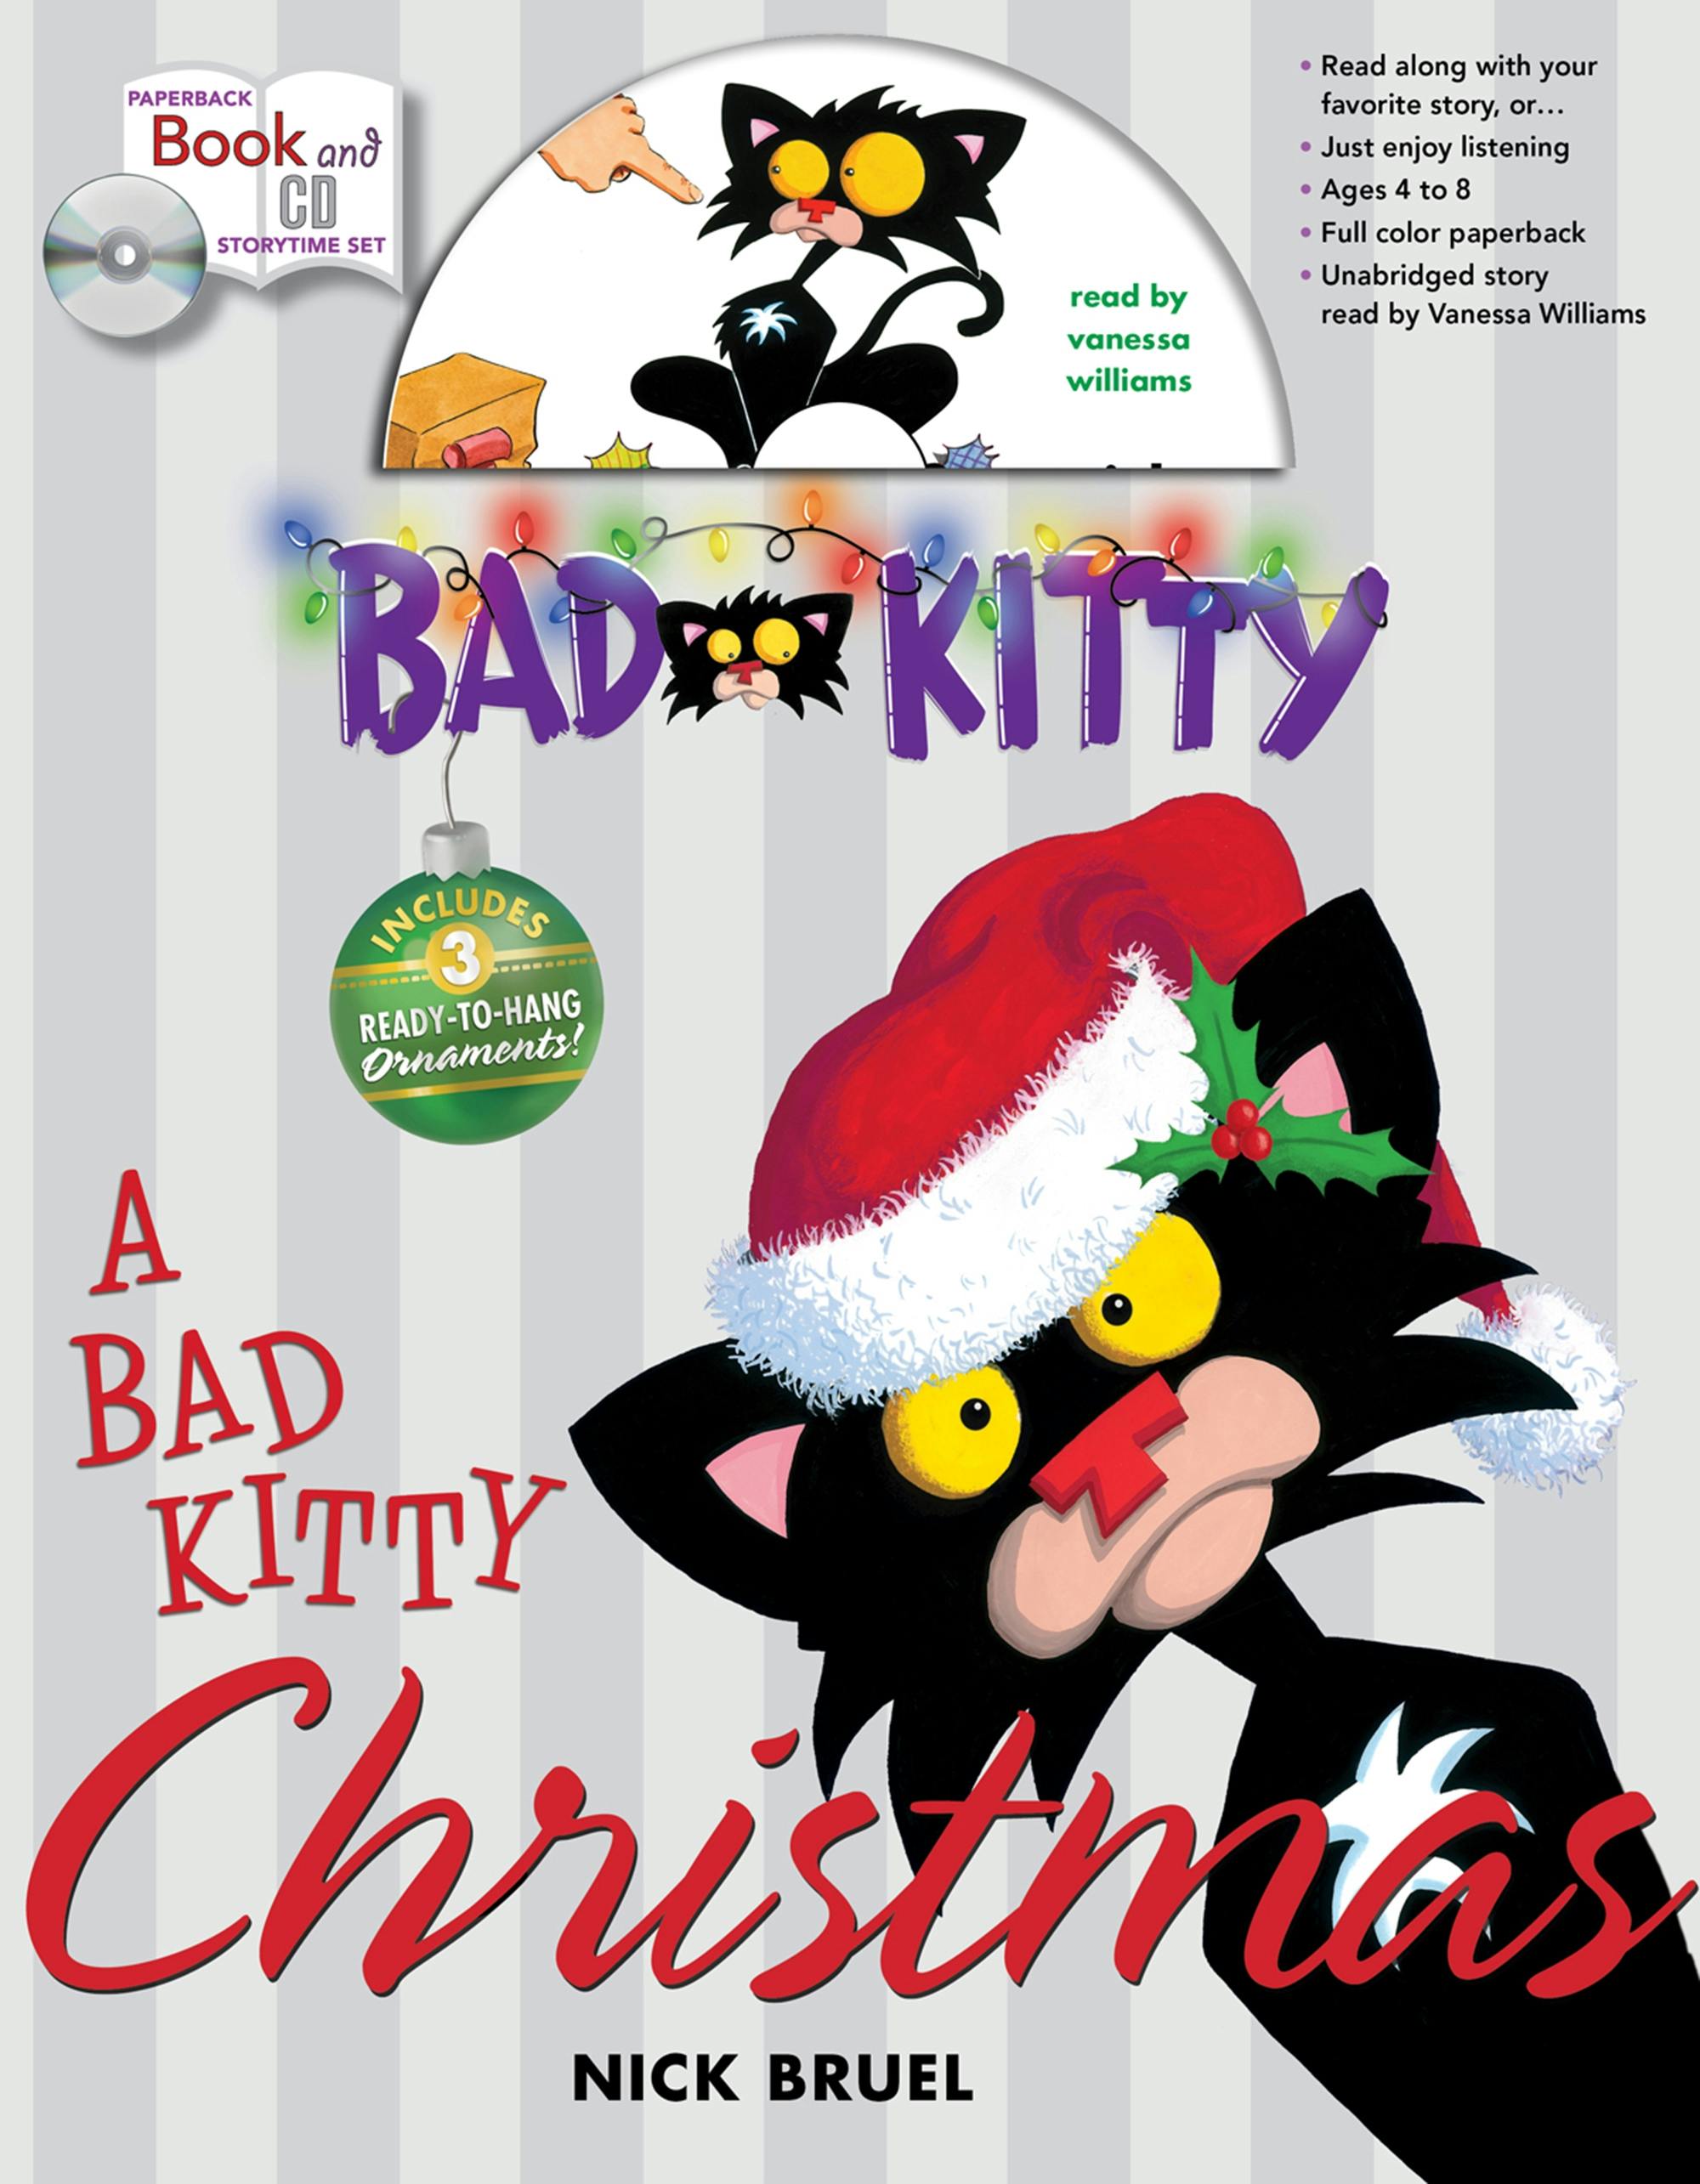 Image of Bad Kitty Christmas Storytime Set